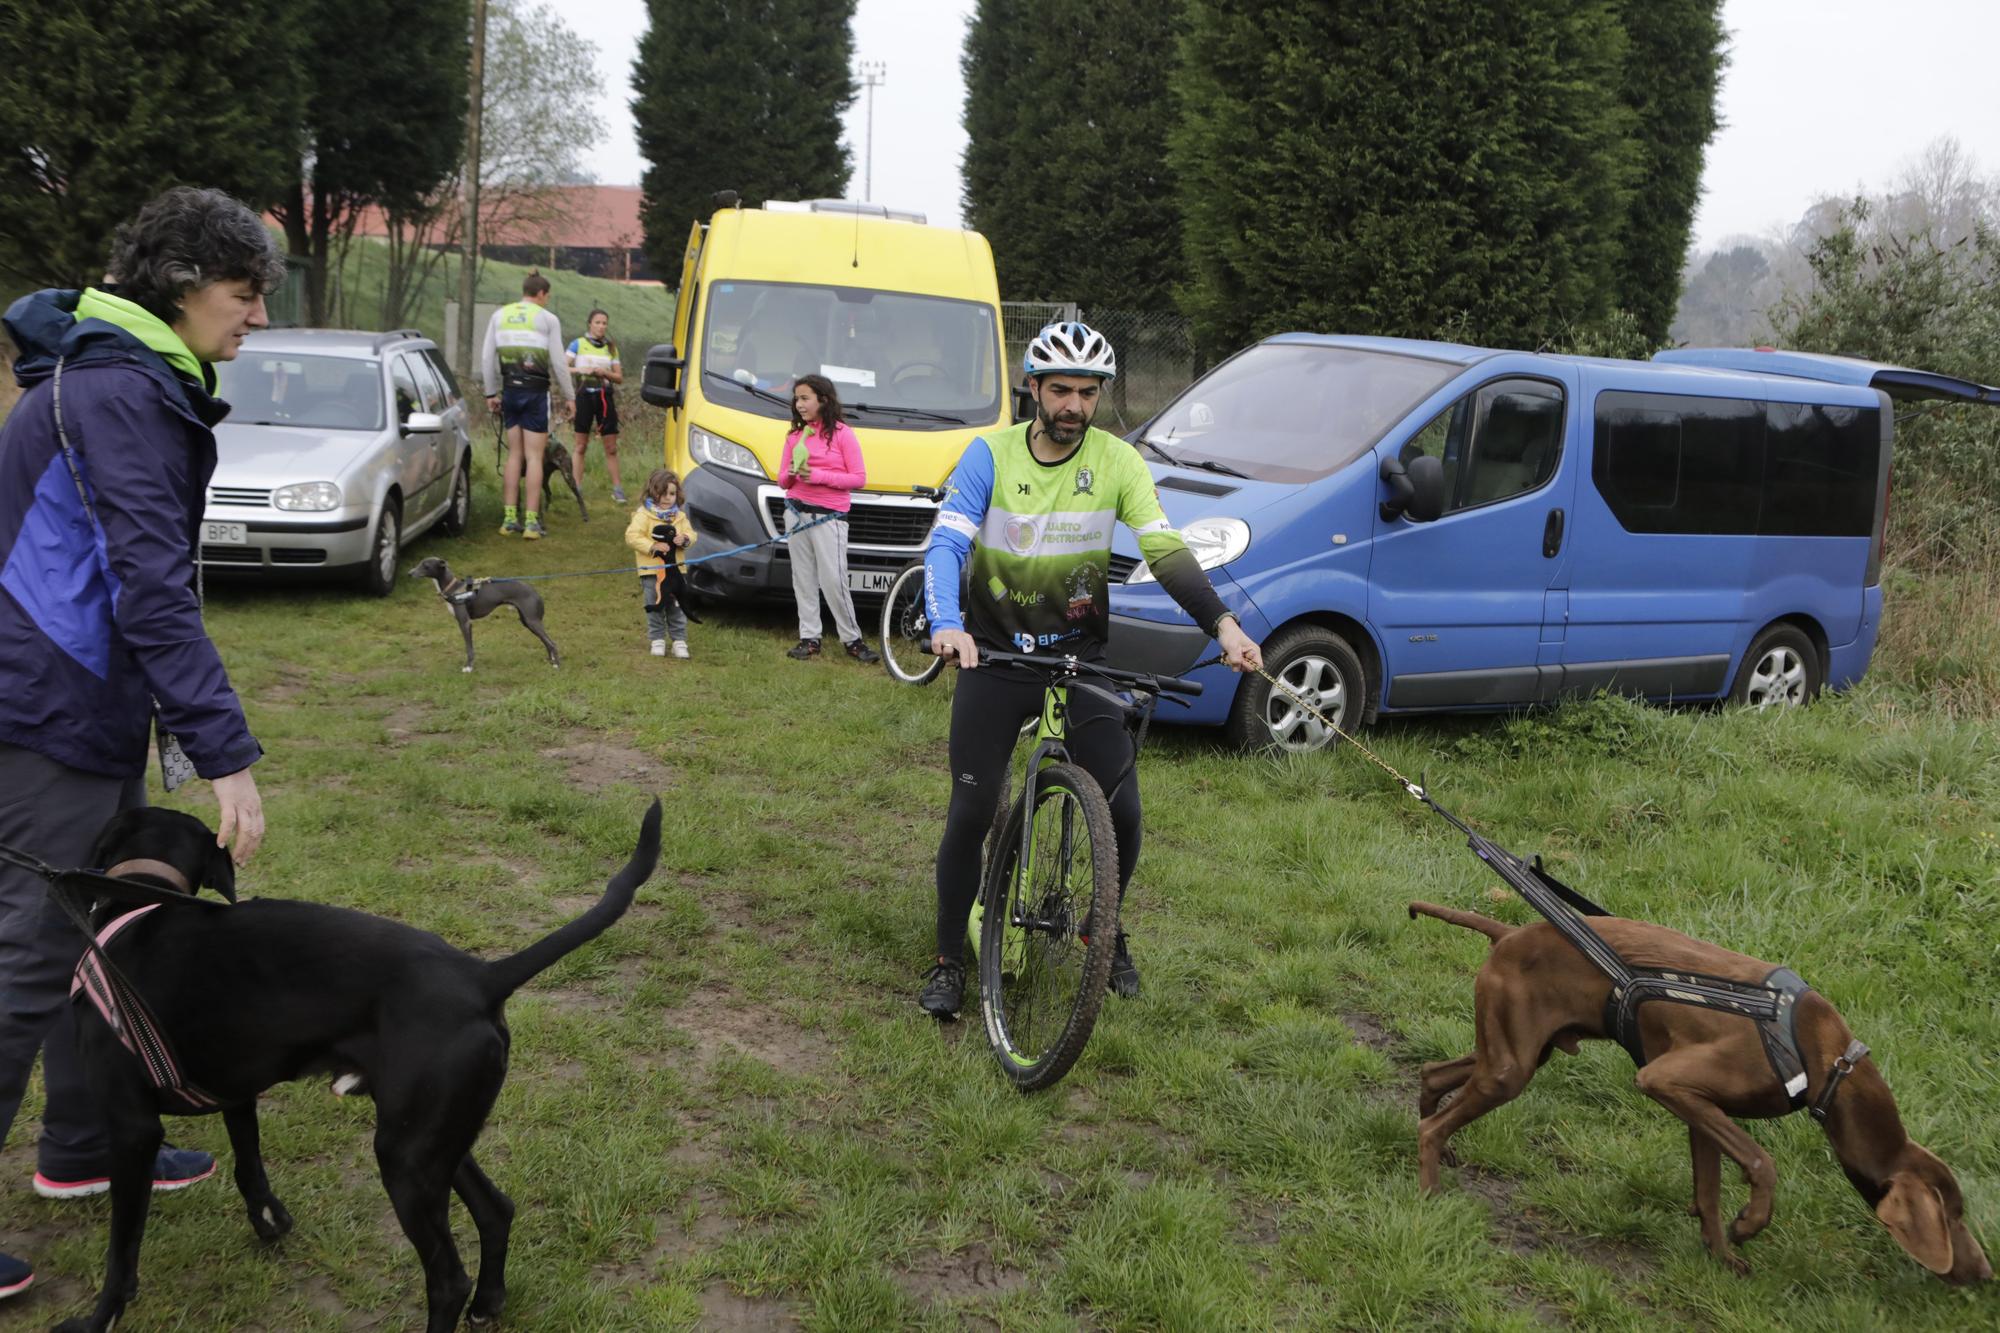 Los corredores del Celtastur de Llanera y sus perros preparan el Mundial en La Morgal: cuatro de sus integrantes estarán en la cita de Plédran (Francia)